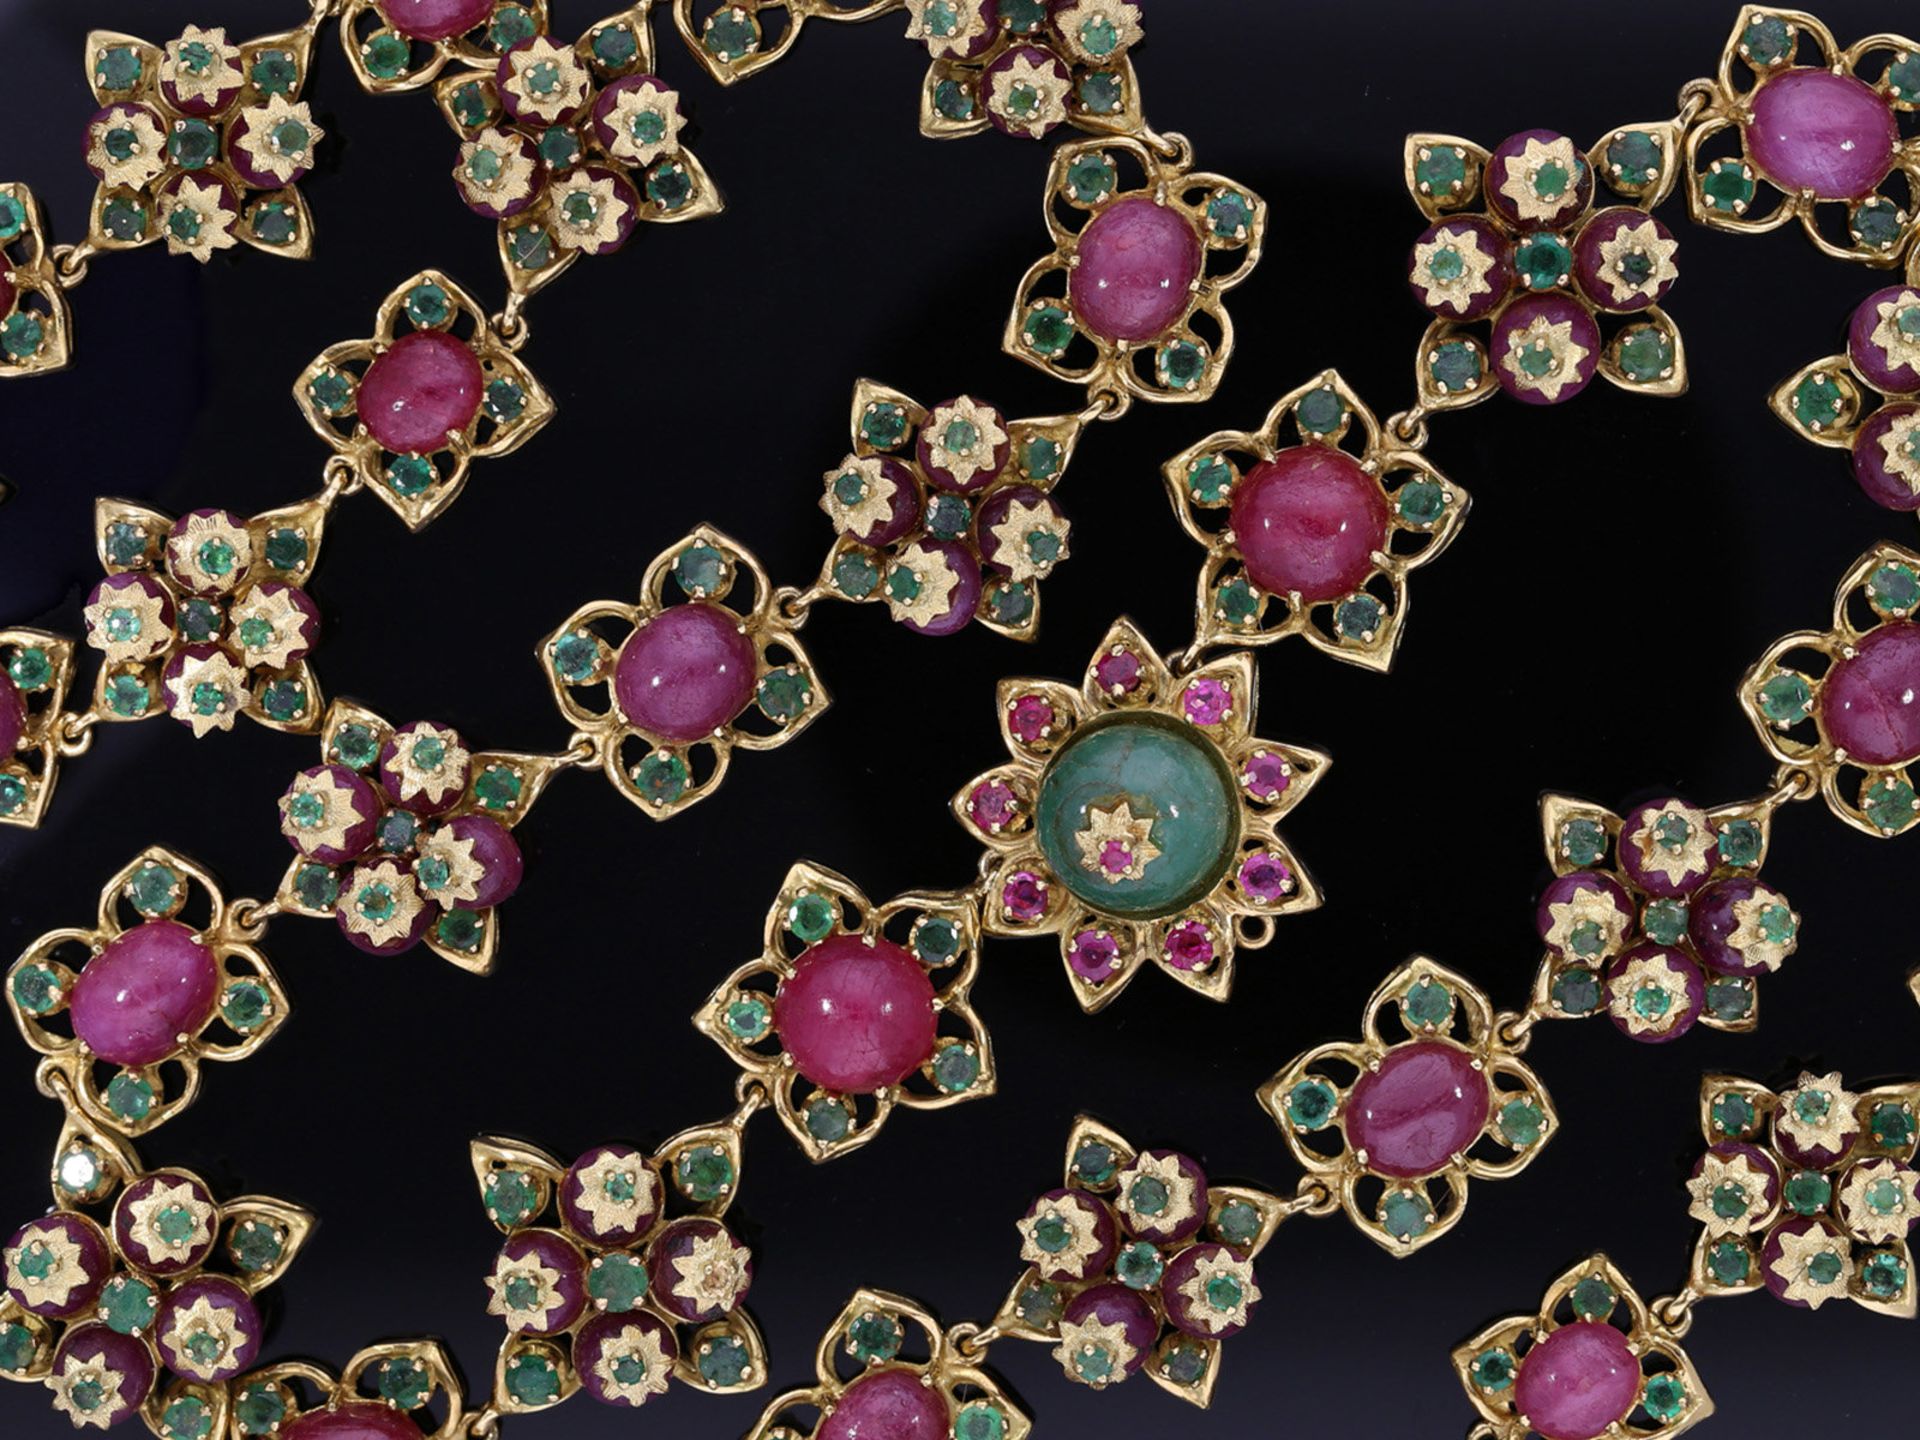 Kette/Collier: hochdekoratives, opulent mit Rubinen und Smaragden besetztes antikes Collier, insgesa - Bild 2 aus 2